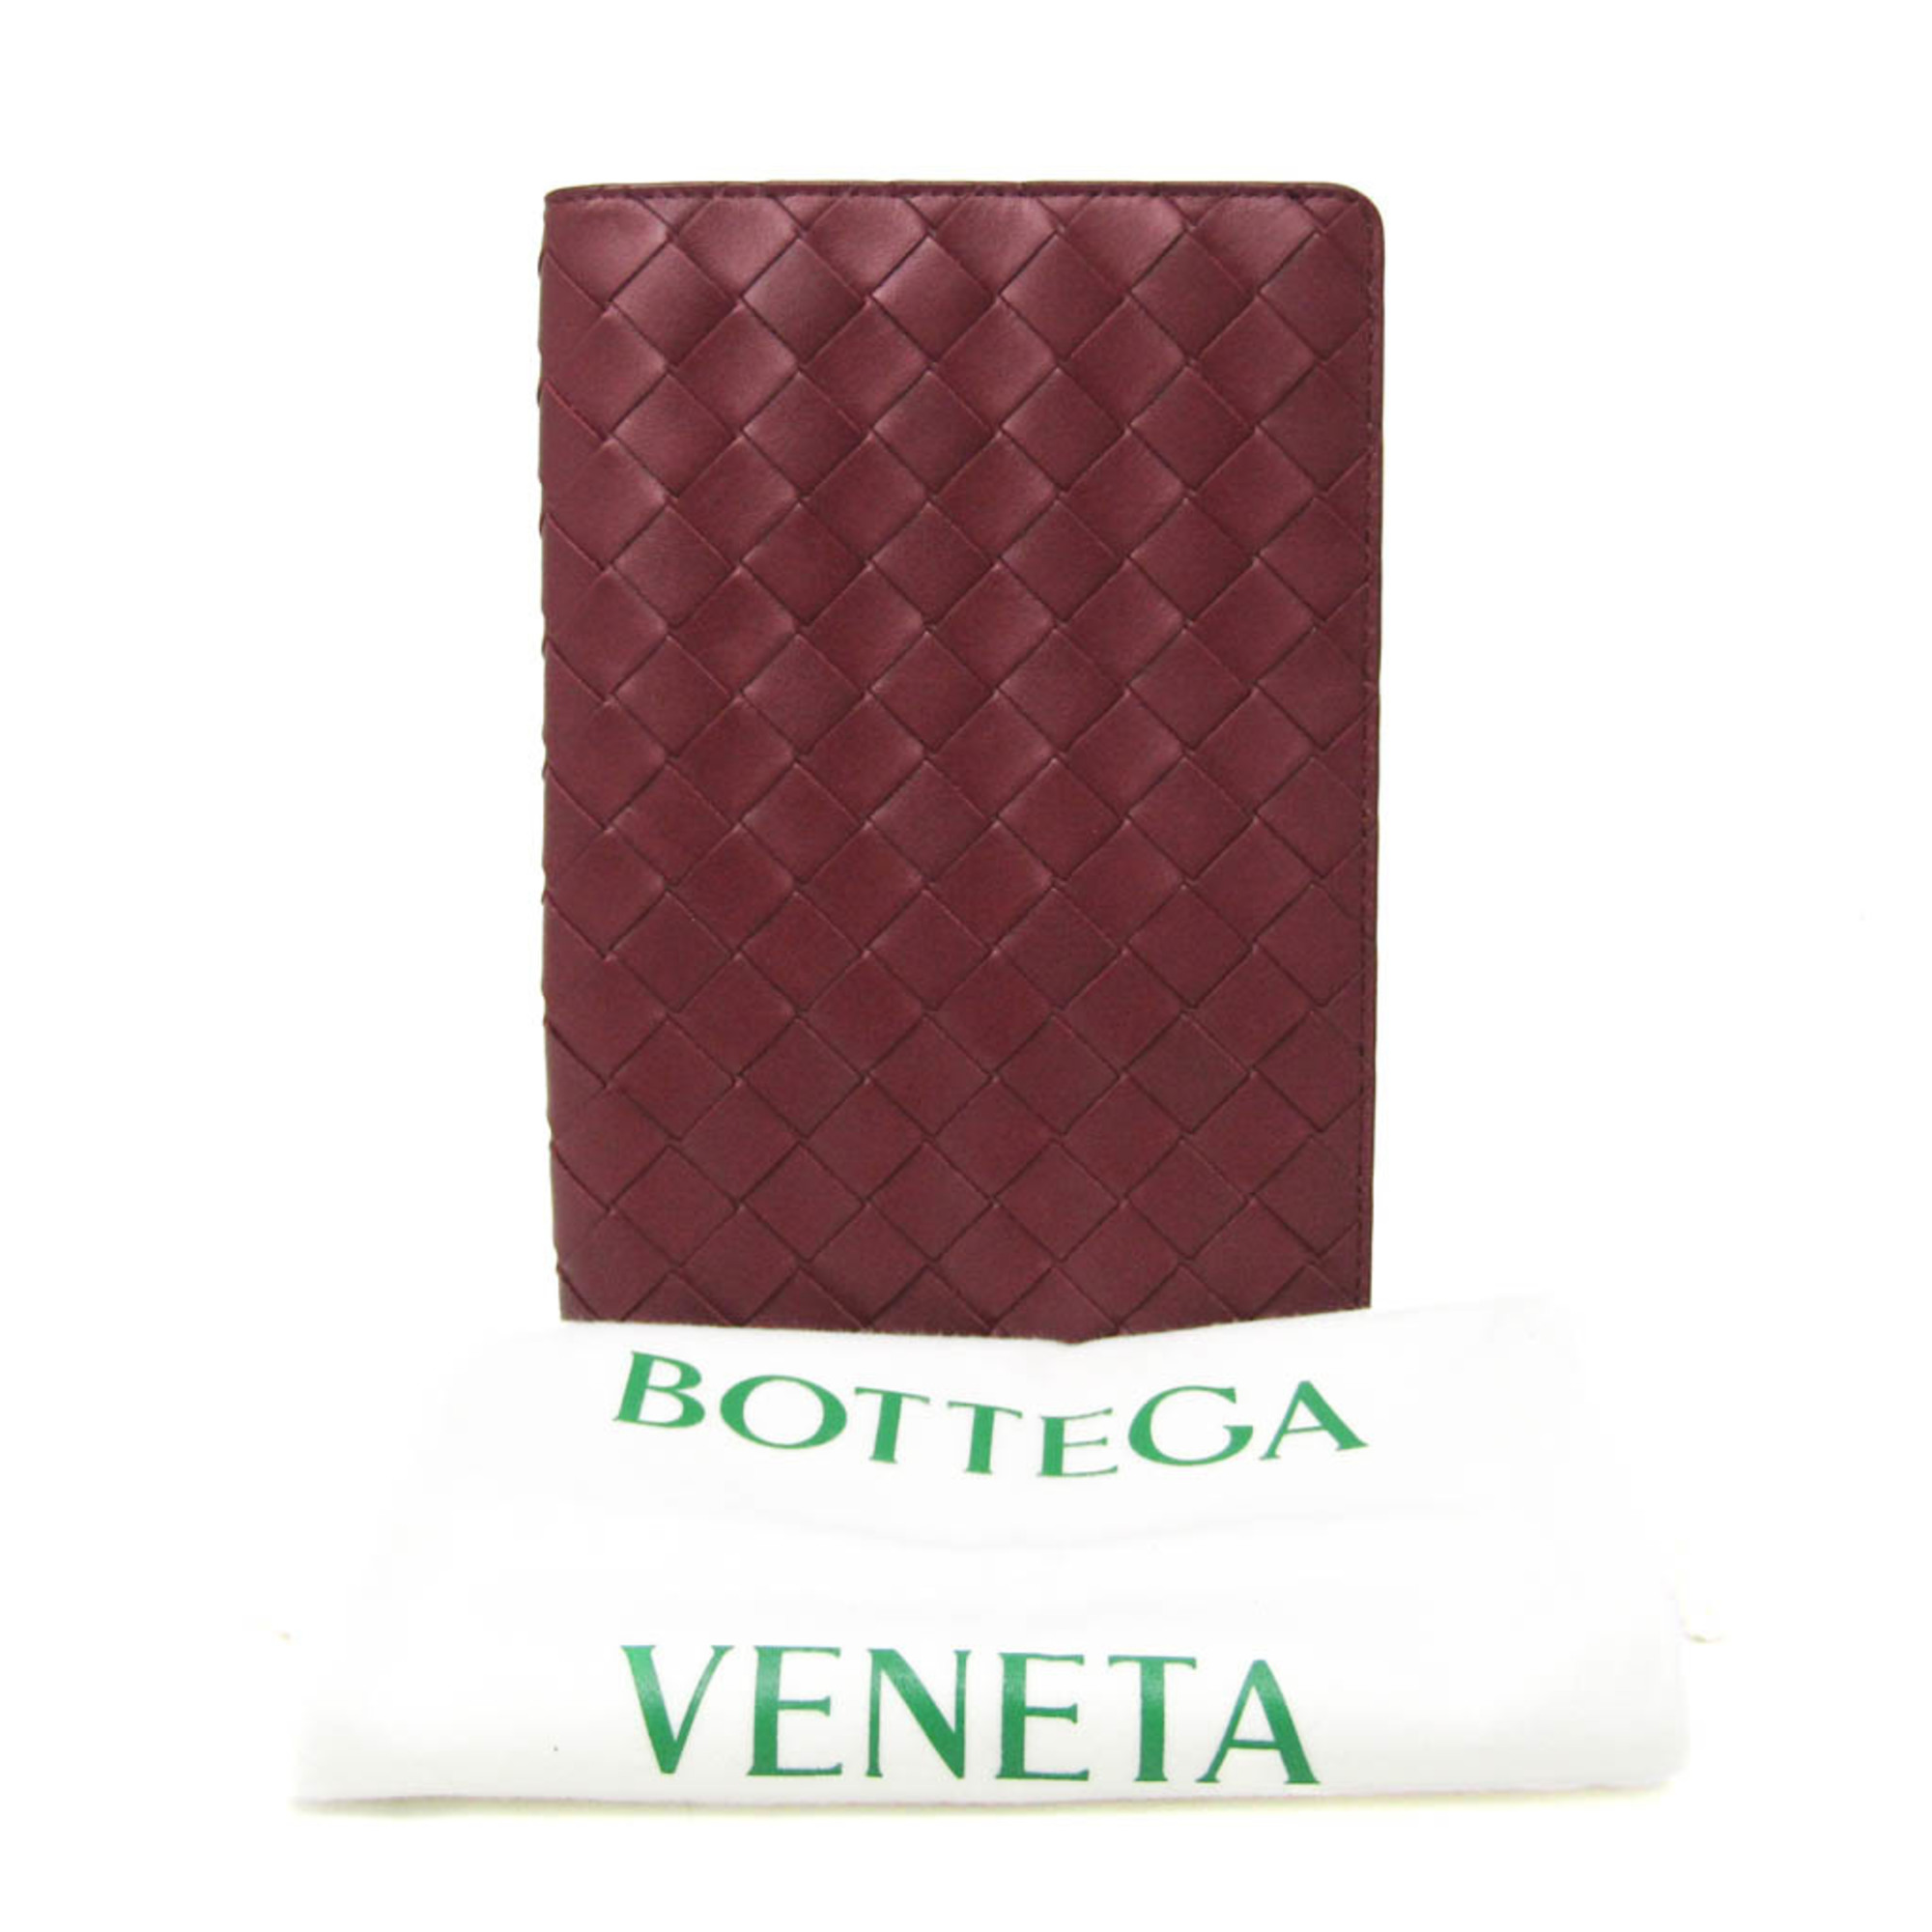 Bottega Veneta Intrecciato A5 Planner Cover Bordeaux book cover